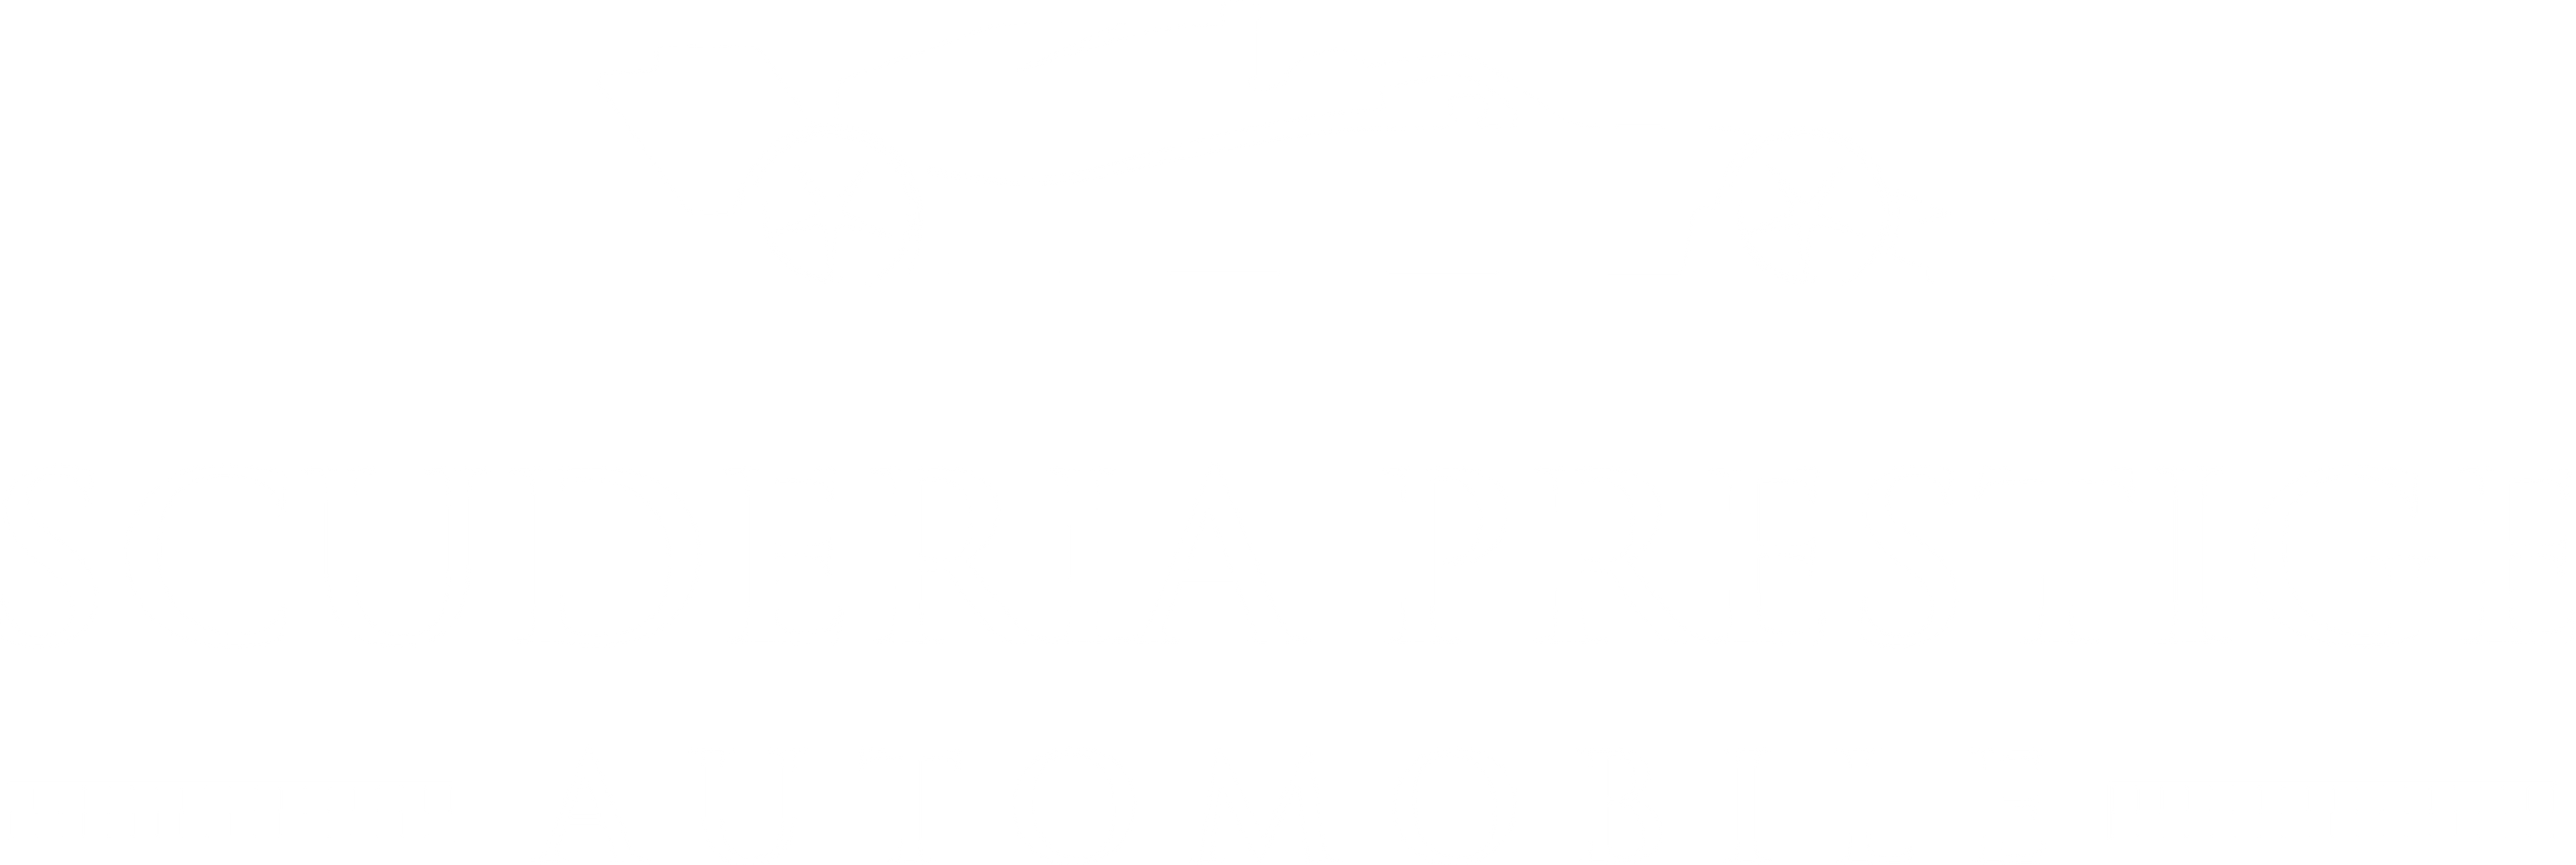 spa scuderia prestige automobile logo white transparent